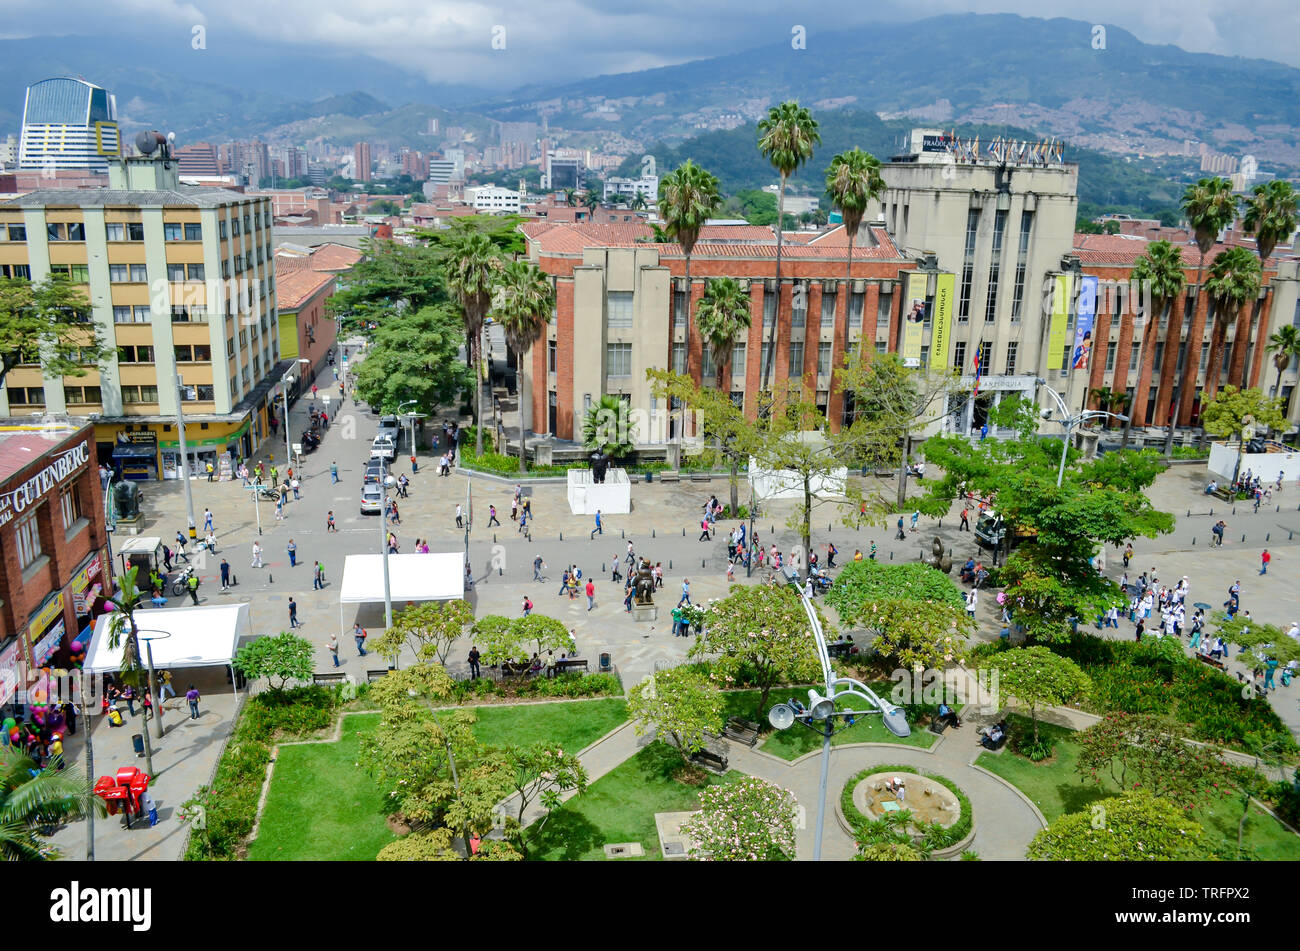 Vista de la Plaza Botero en Medellín, una atracción en la ciudad de Medellín. El Museo de Antioquia es visto en el centro de la imagen. Foto de stock